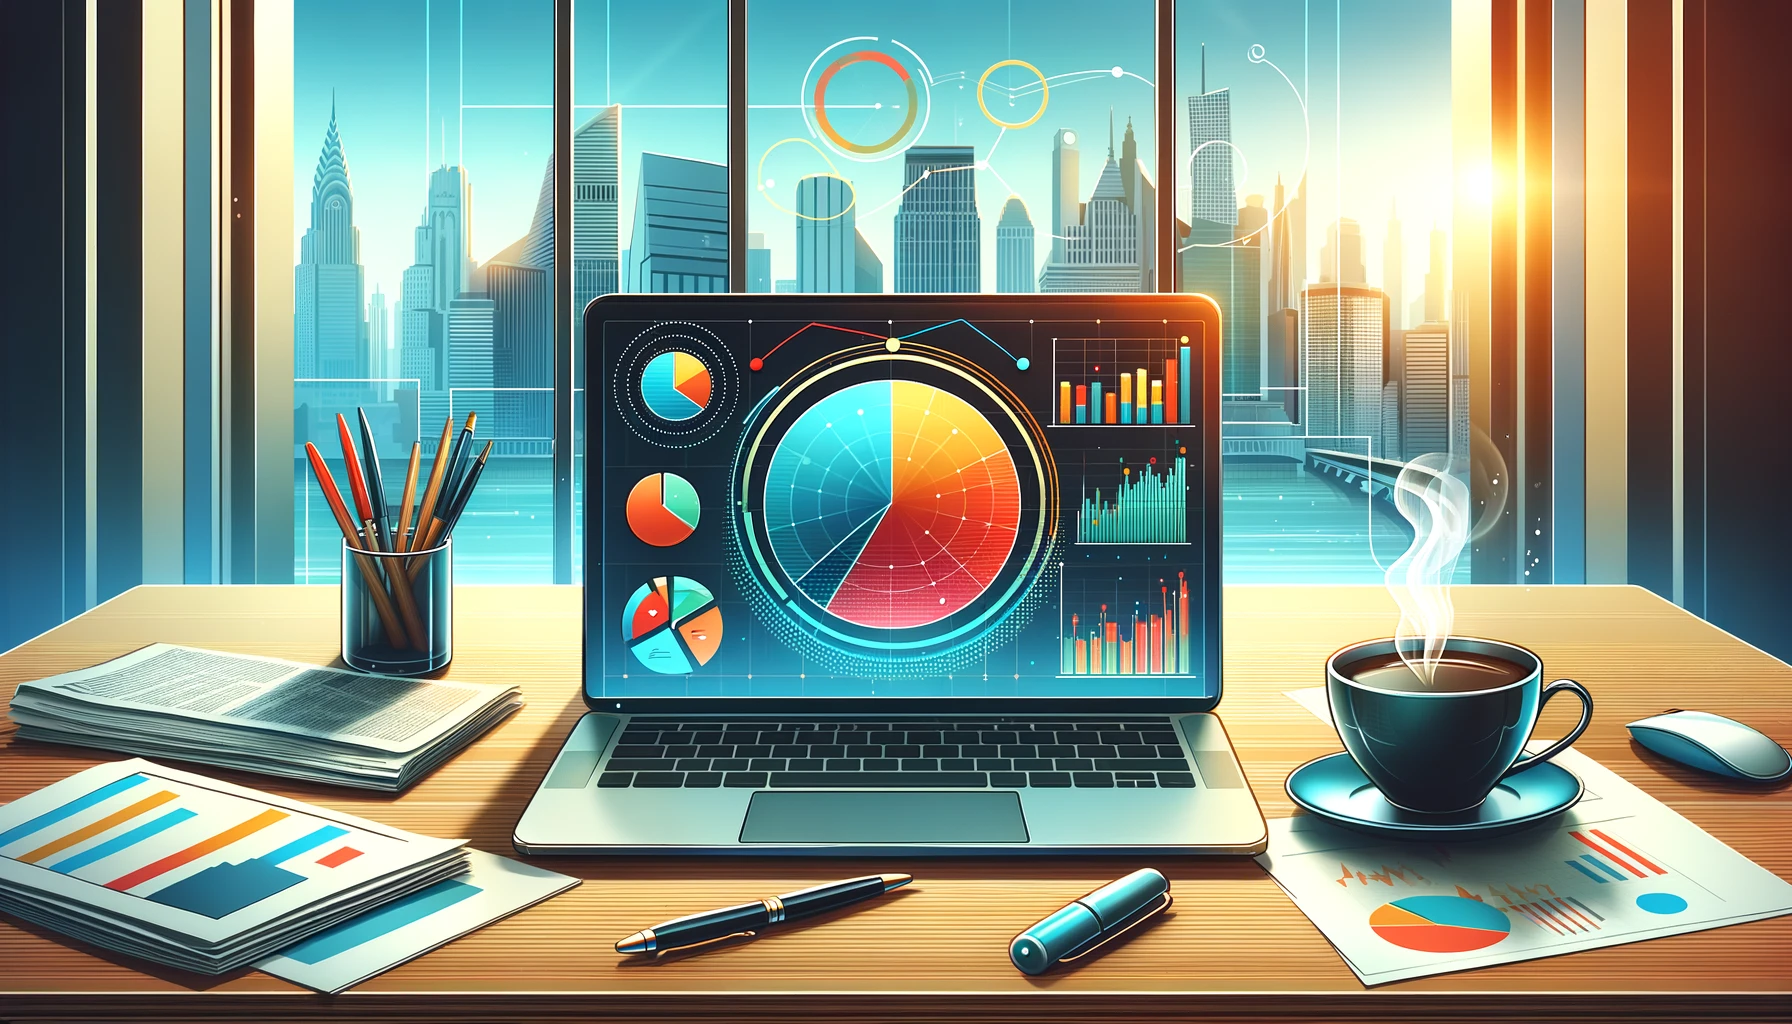 モダンなオフィスのデスクには、カラフルな円グラフが表示されたノートパソコン、コーヒーカップ、金融新聞、ペンが置かれており、背景には都会の風景が大きな窓から見える。画像は投資分析と財務計画を象徴する。